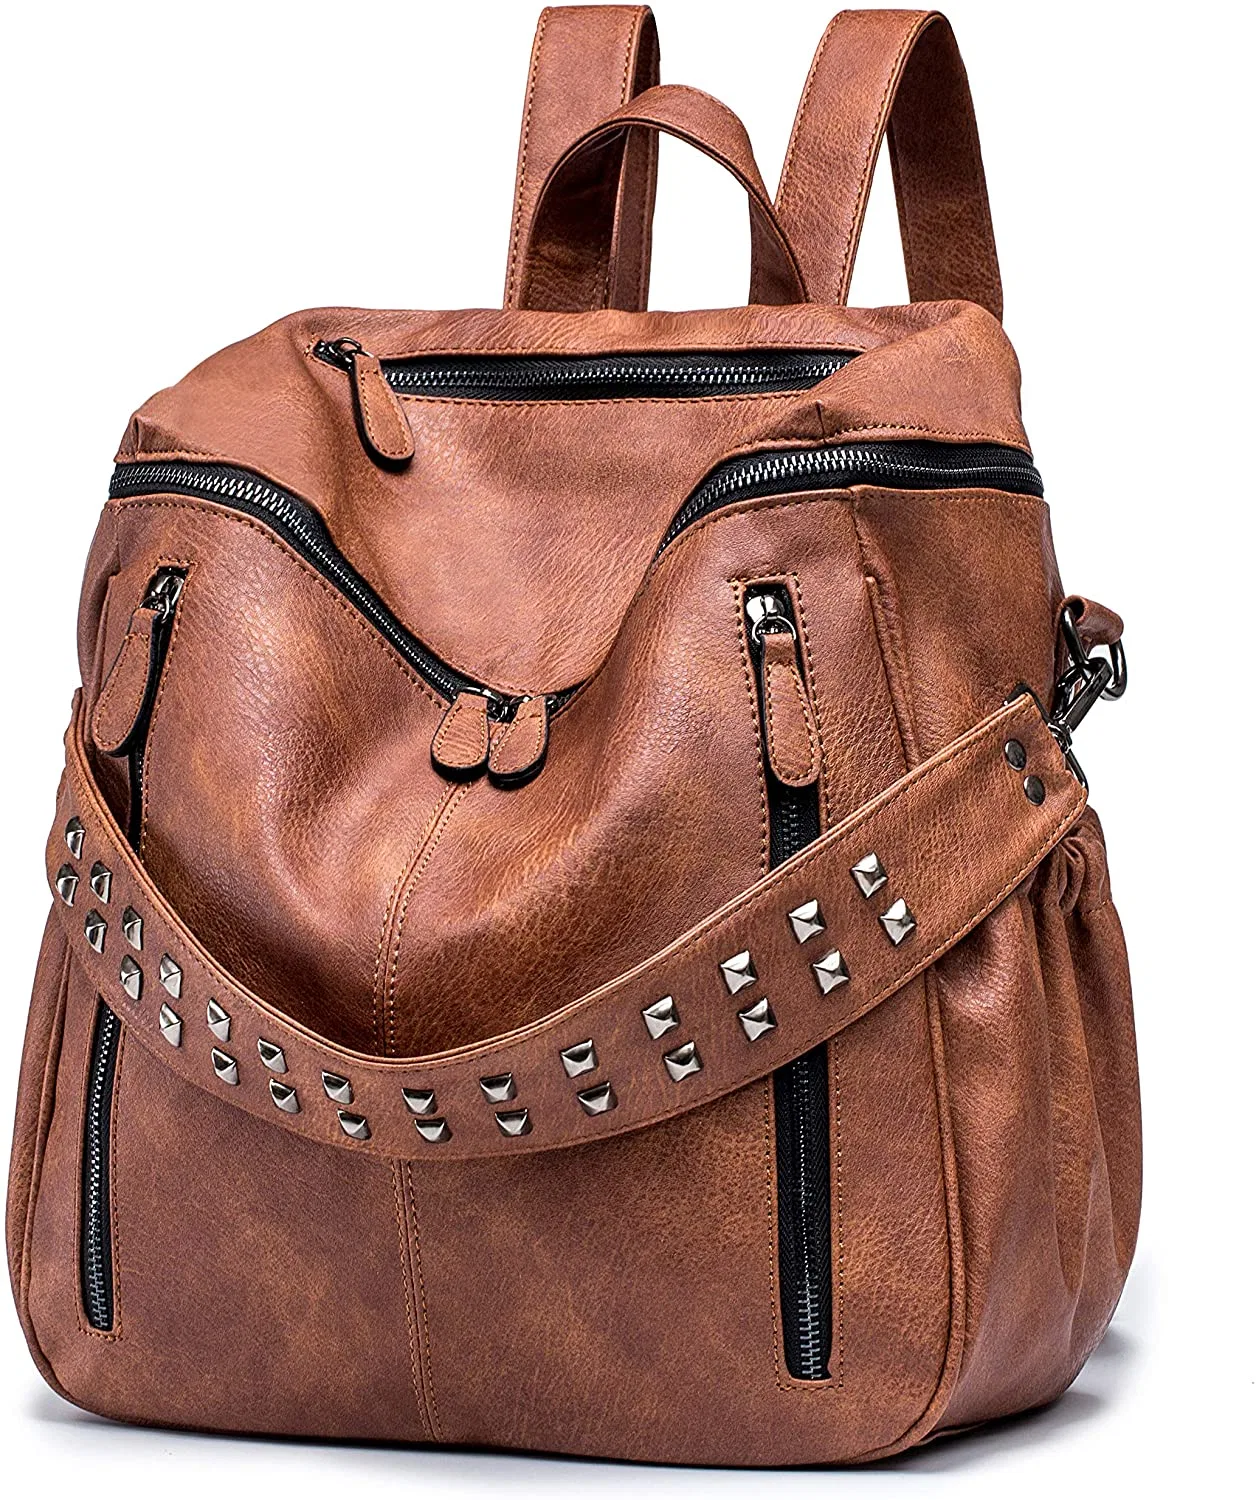 Женщин PU кожа рюкзак кошелек с откидным верхом дамы моды повседневный поездки большие школы взять на себя сумки